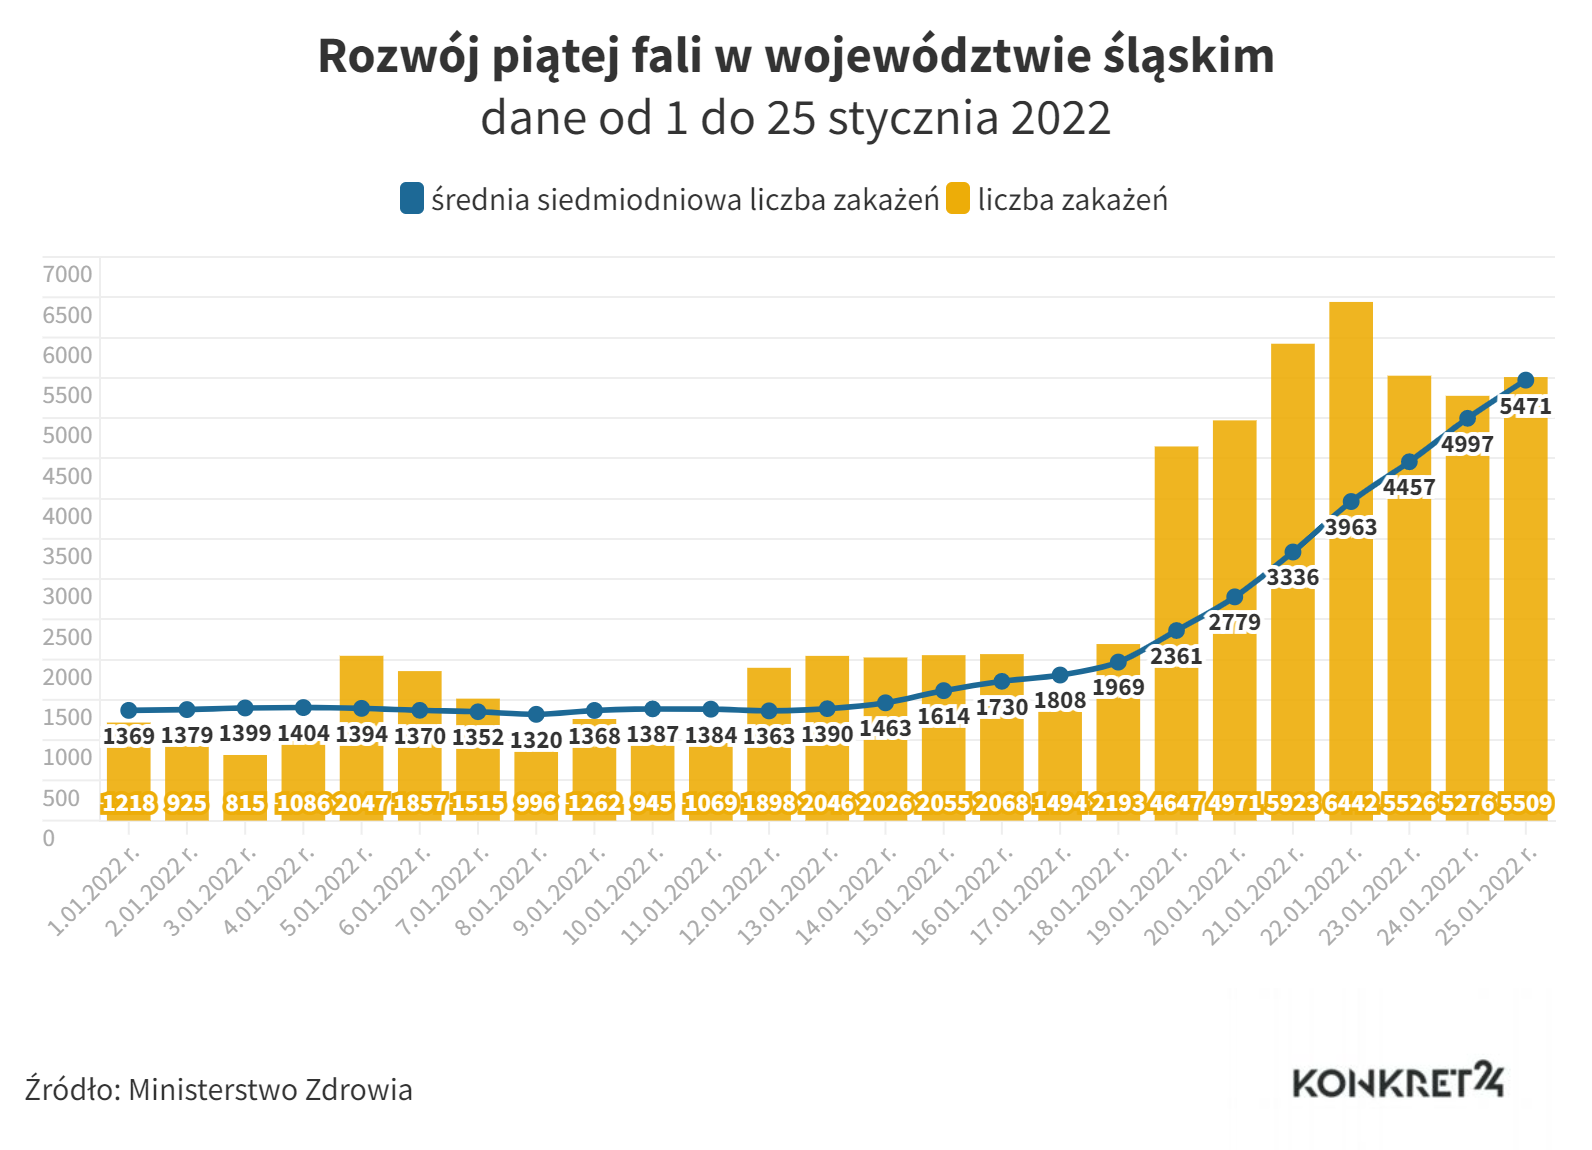 Rozwój piątej fali w województwie śląskim (dane od 1 do 25 stycznia 2022)